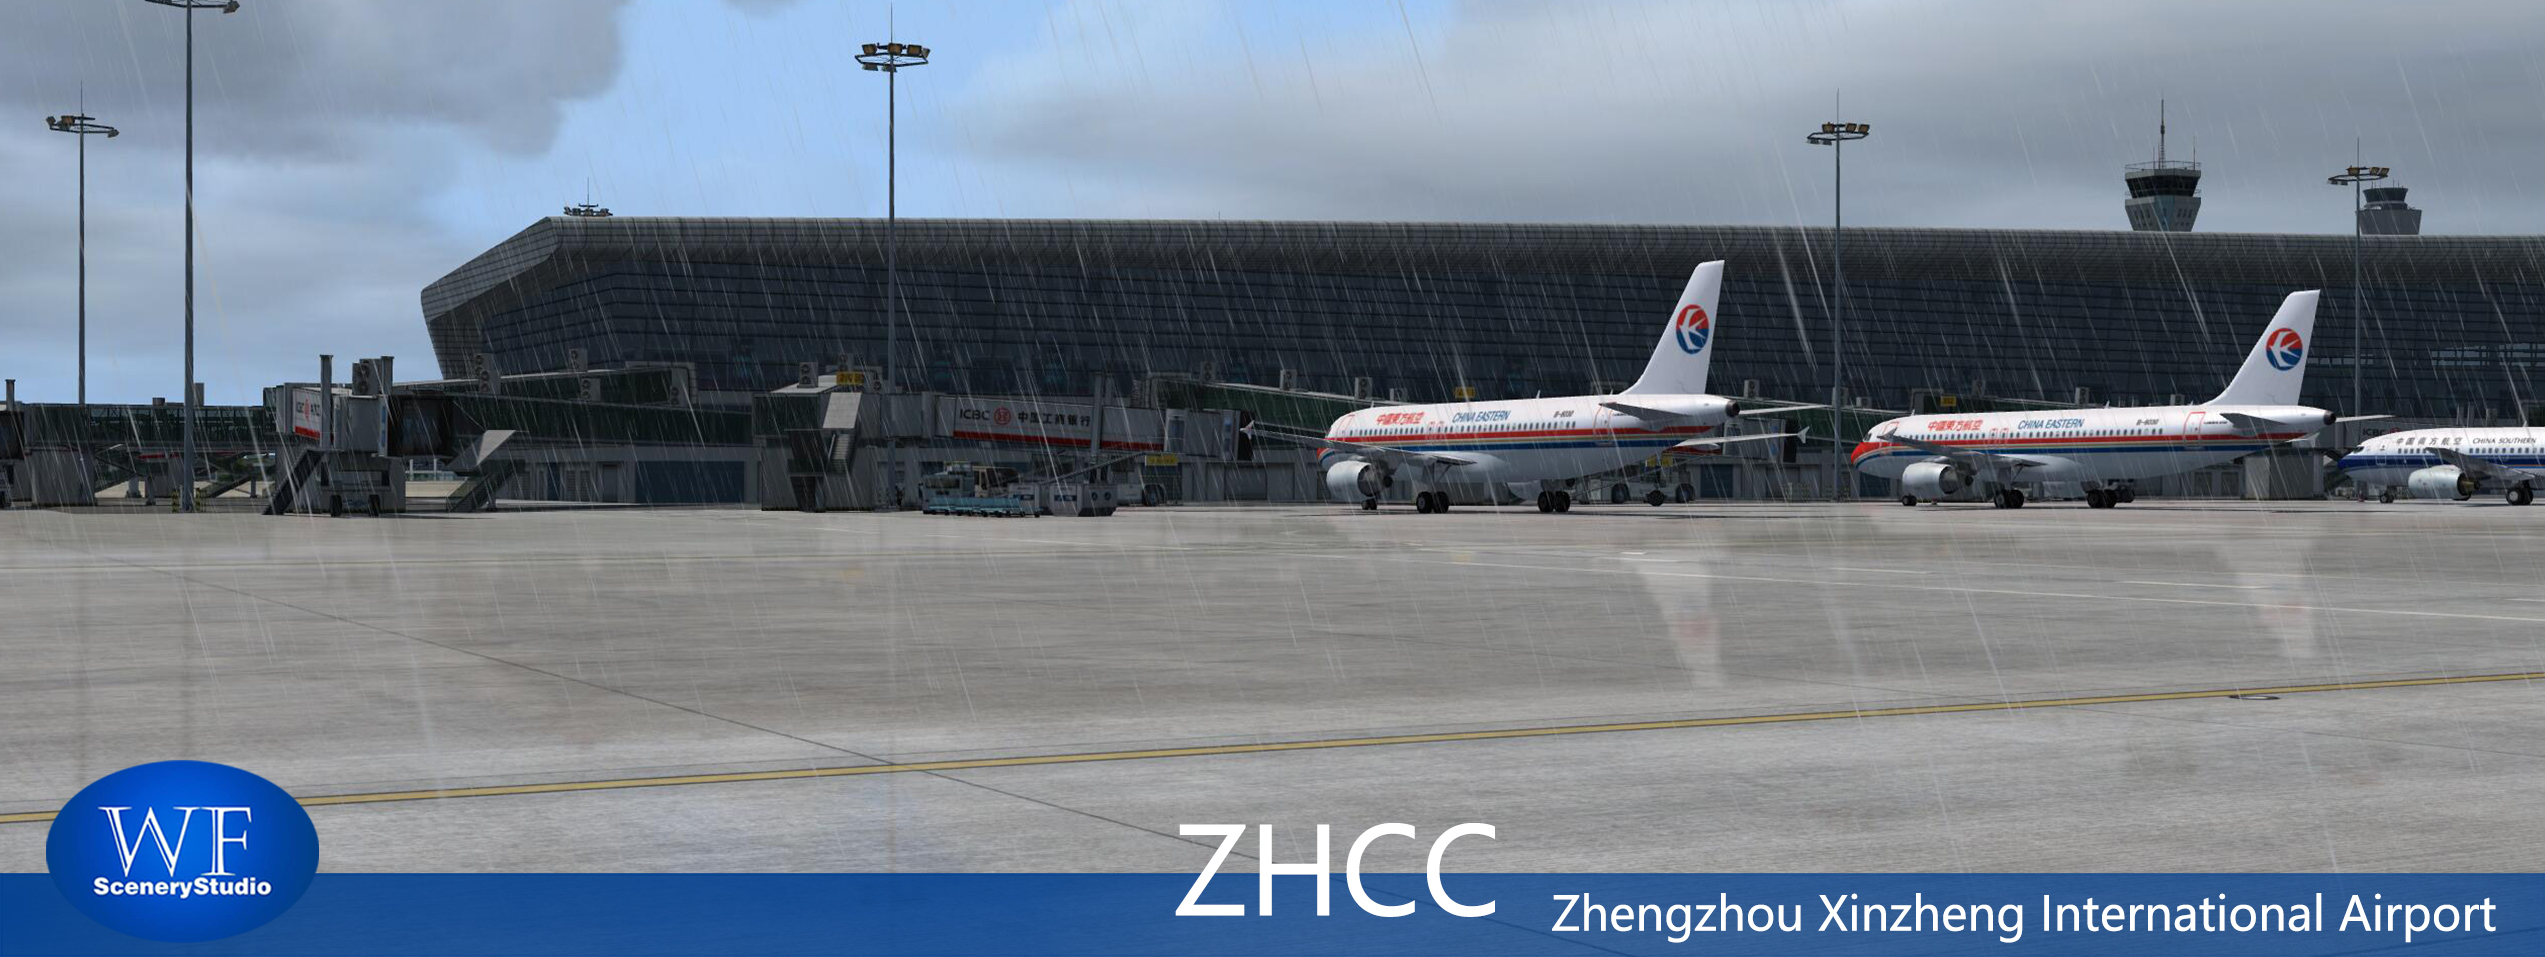 郑州新郑国际机场发布-1172 